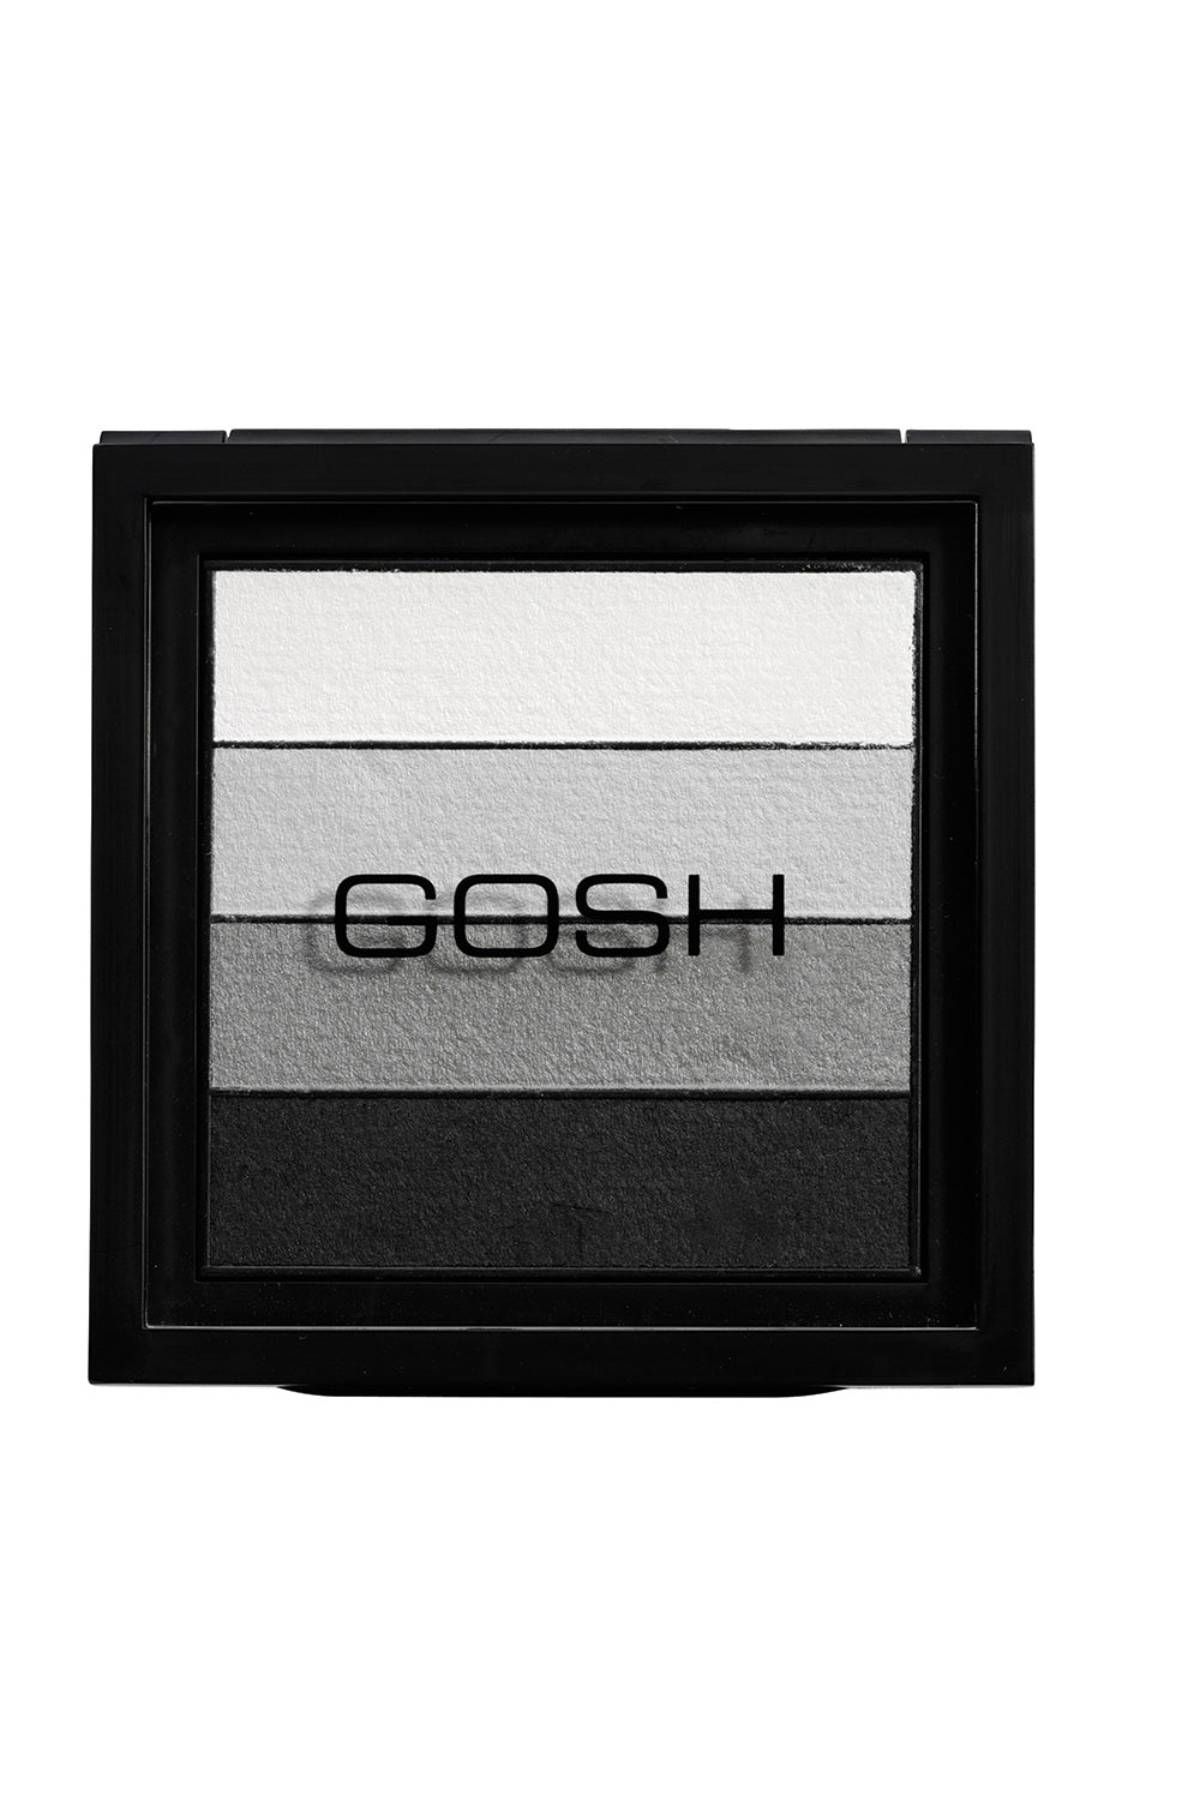 Gosh - Smokey Eyes Palette - 01 Black 